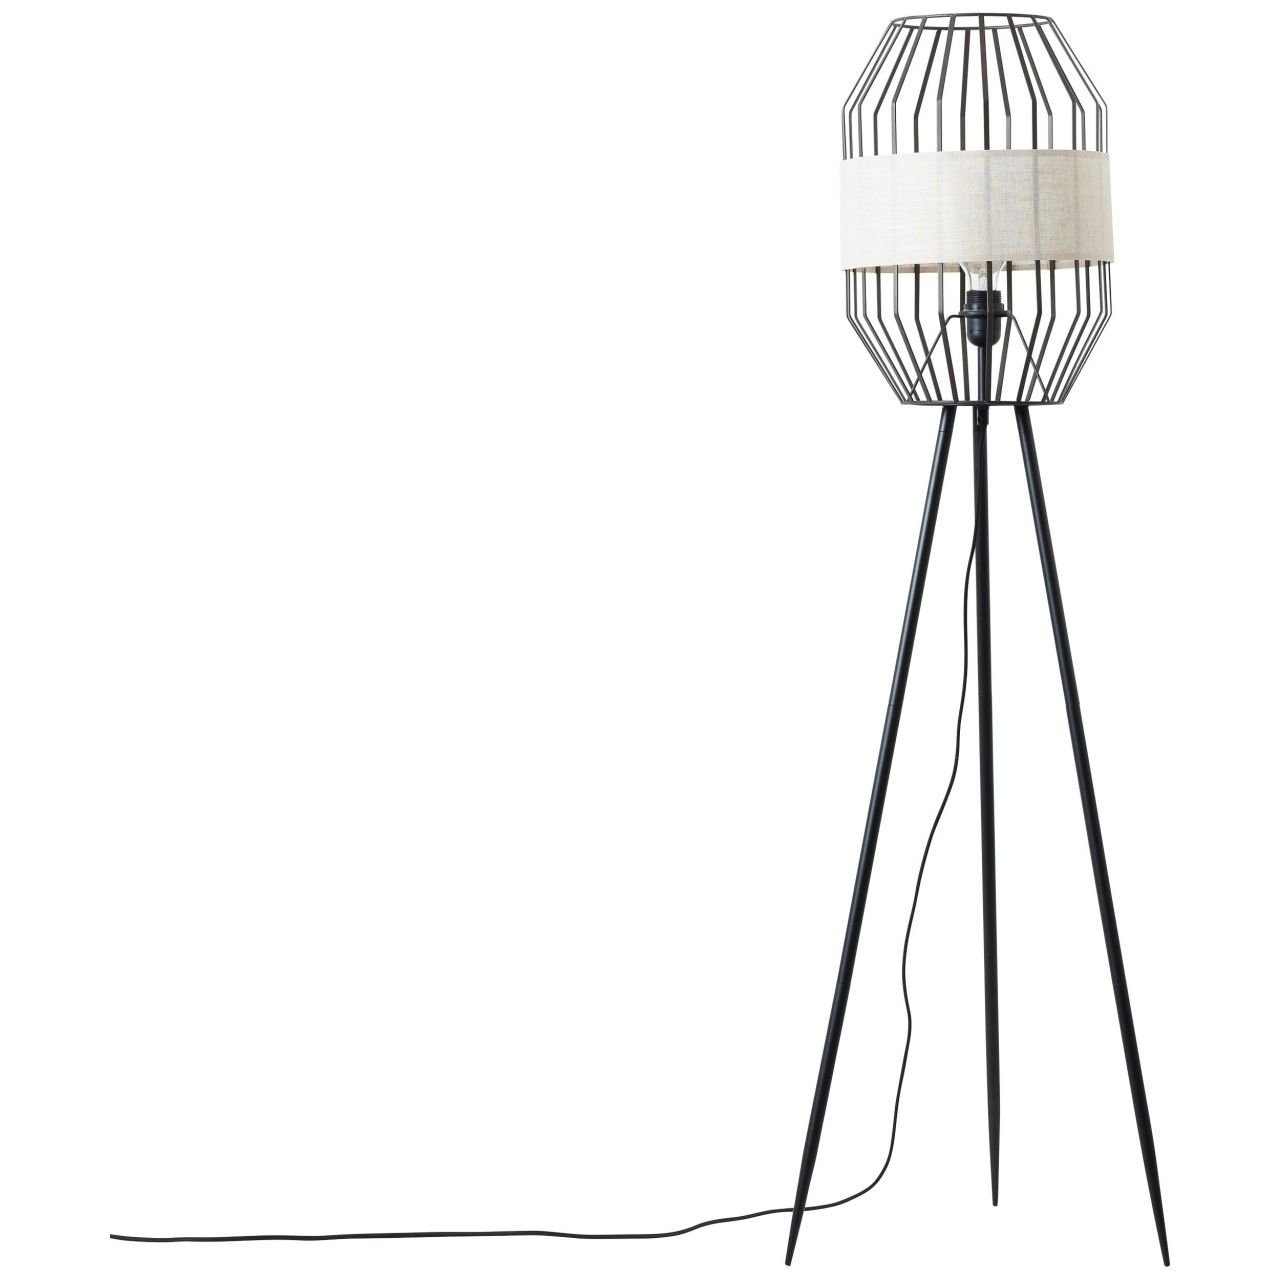 Standleuchte schwarz/natur, Lampe, E27, Stehlampe dreibeinig 1x Slope Slope, Brilliant A60, 40W